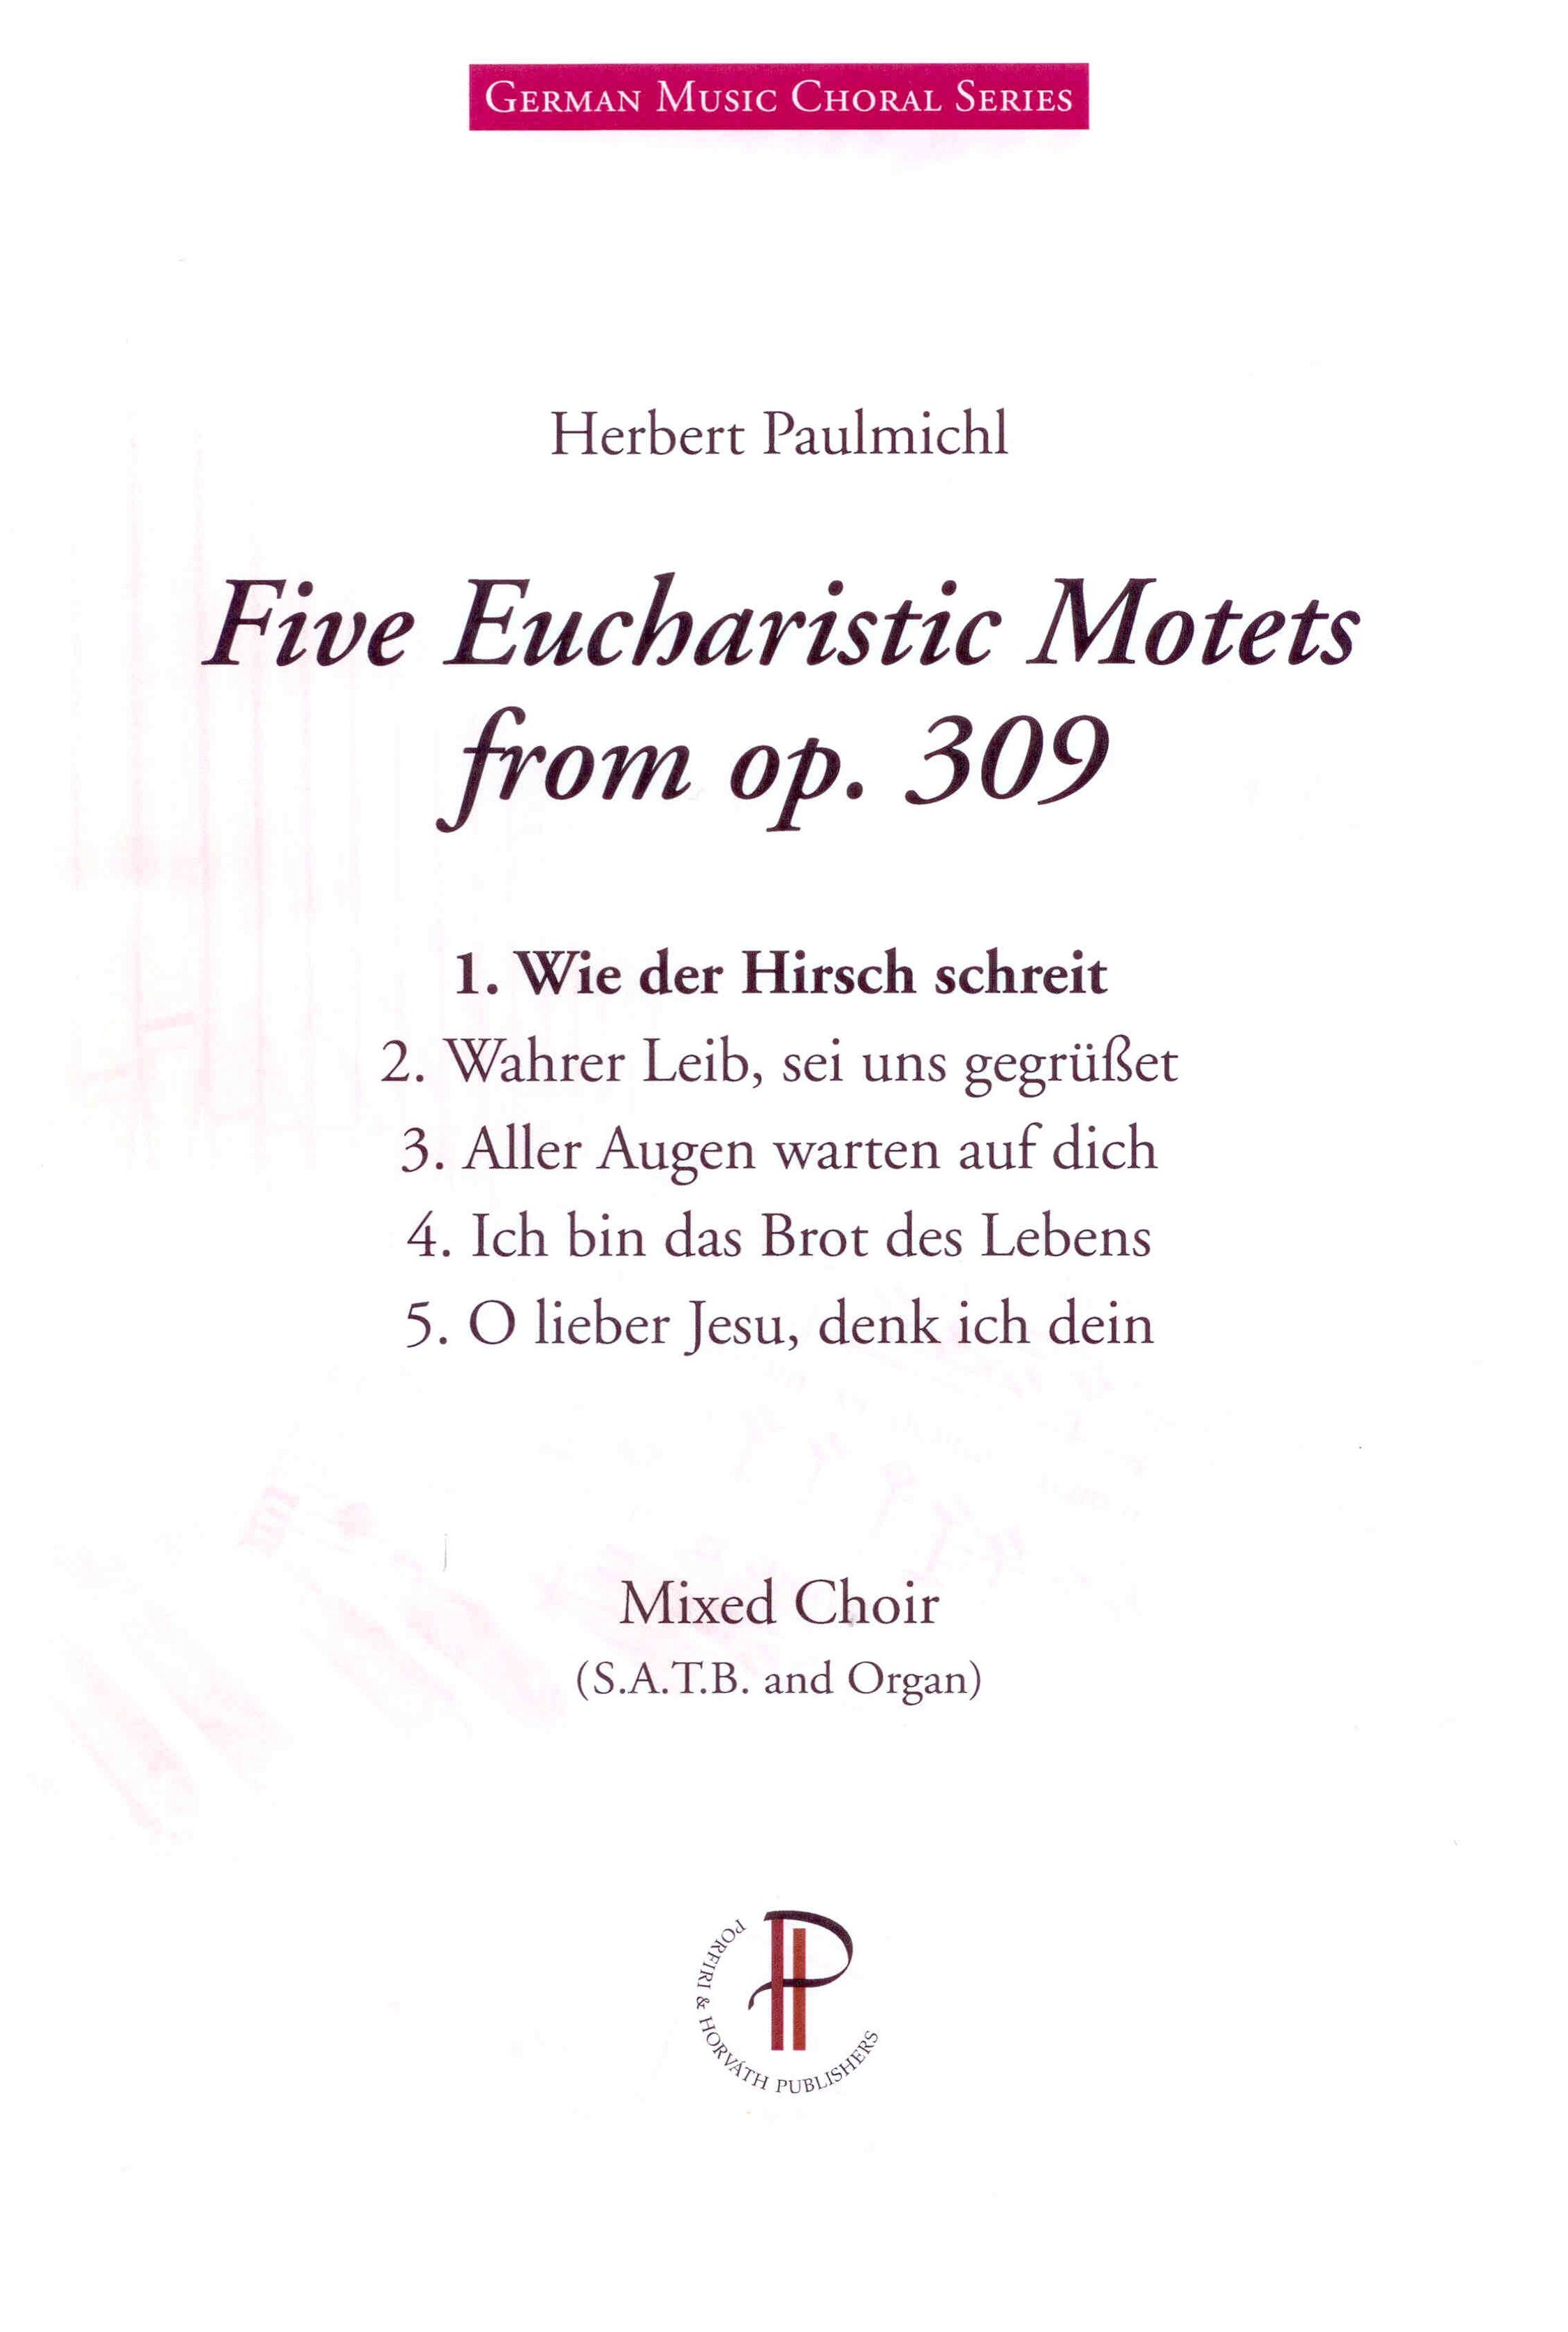 Fünf eucharistische Motetten op. 309 - Probepartitur zeigen